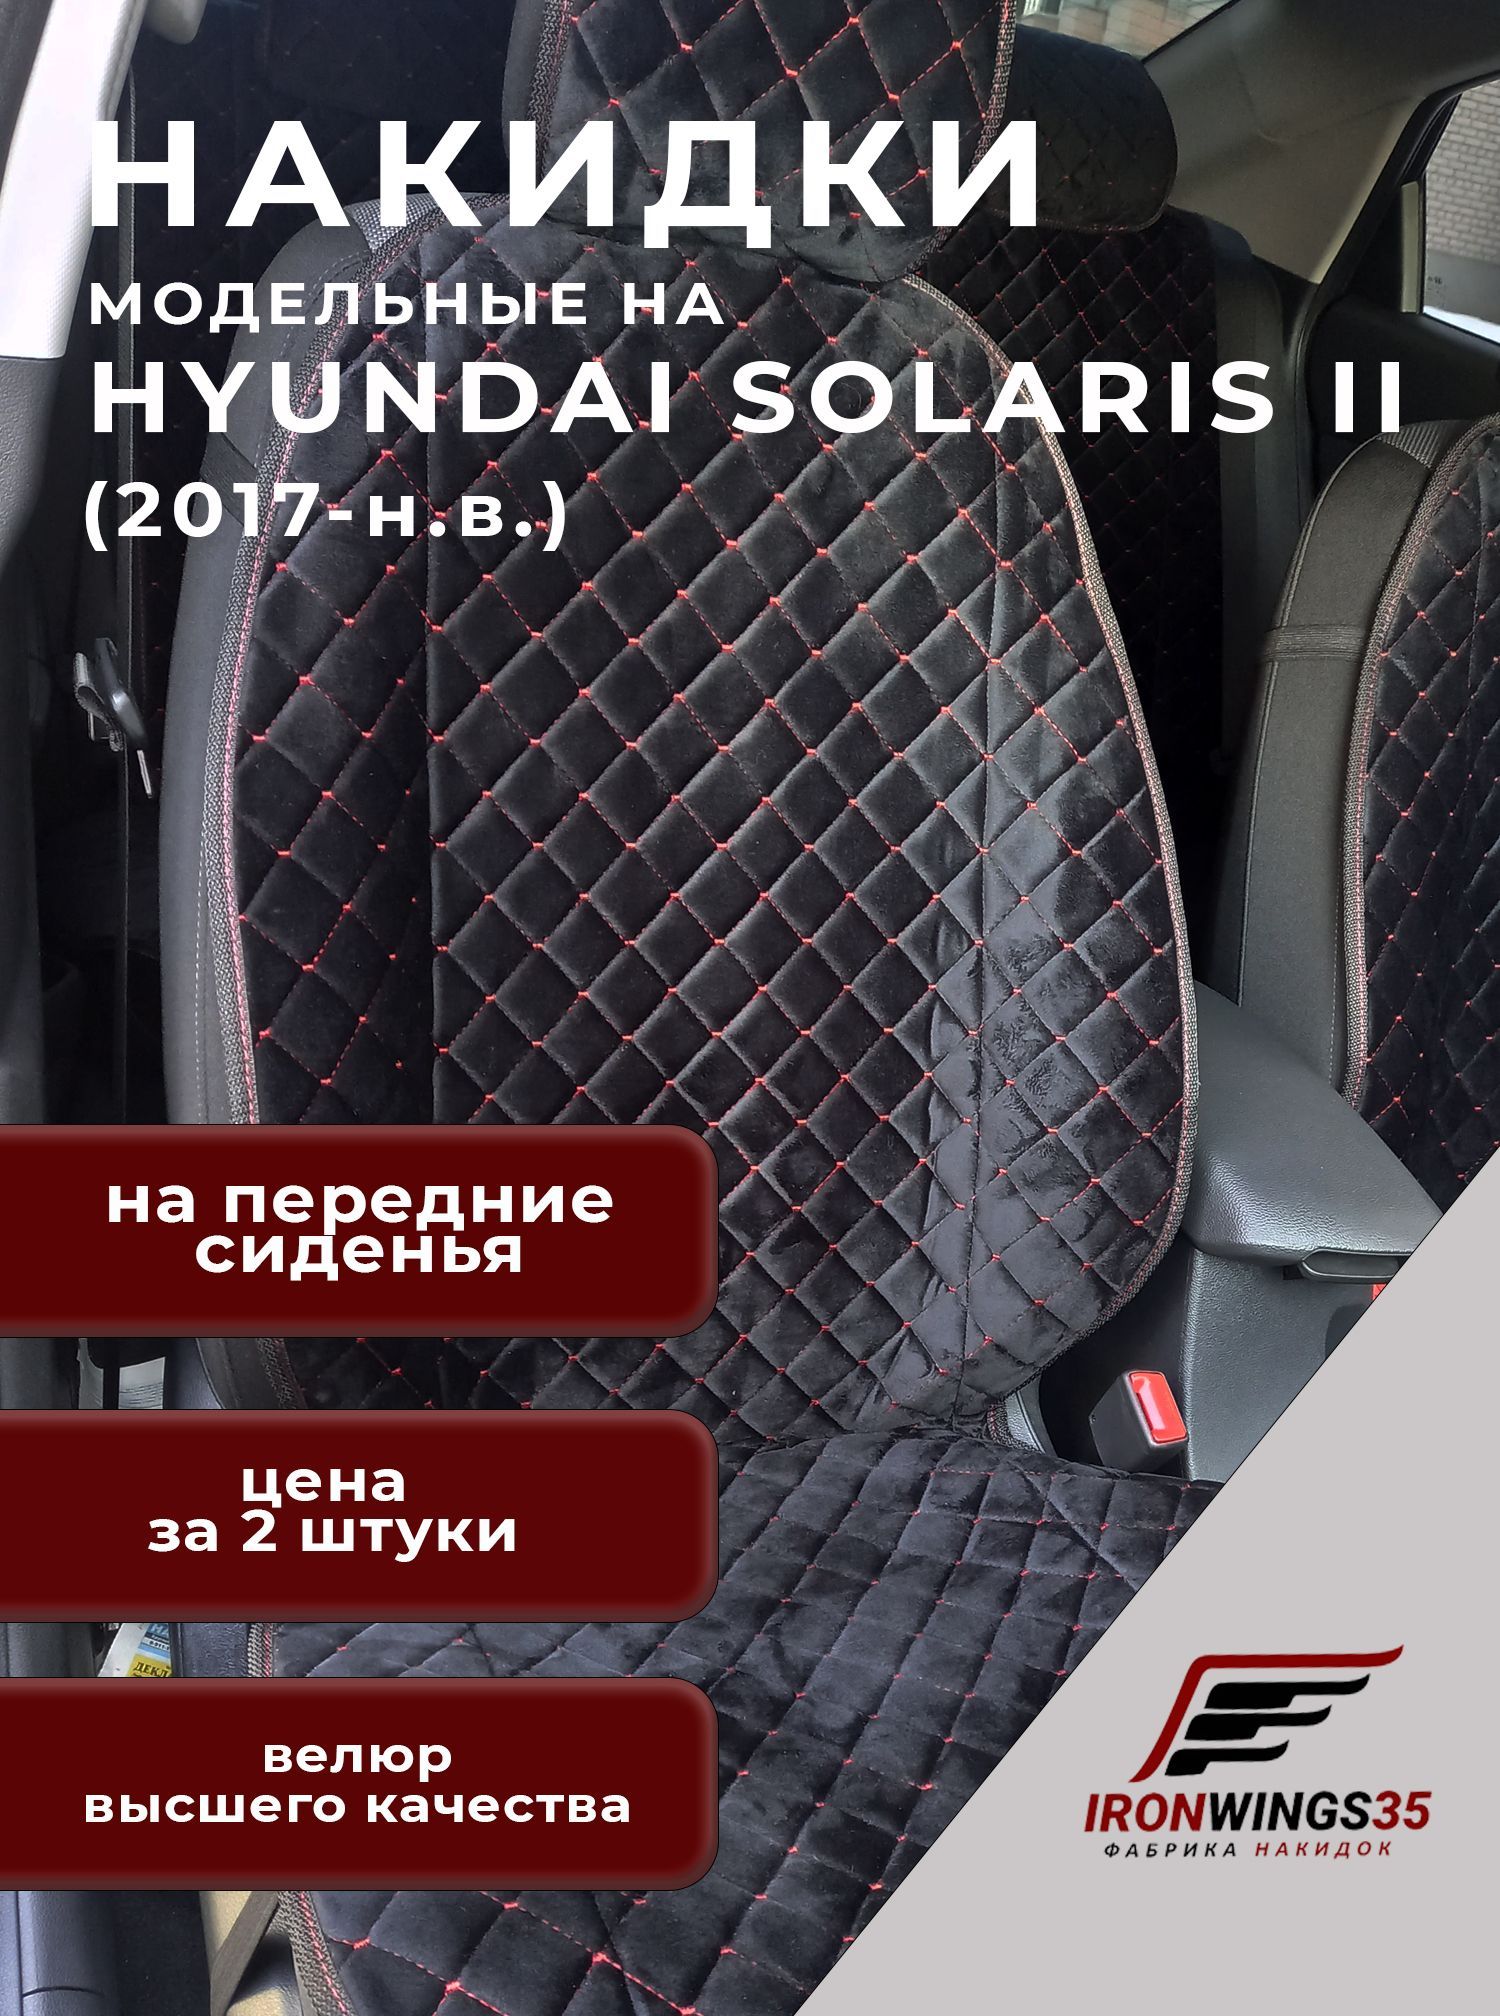 Характеристики модельных чехлов из алькантары для Hyundai Solaris